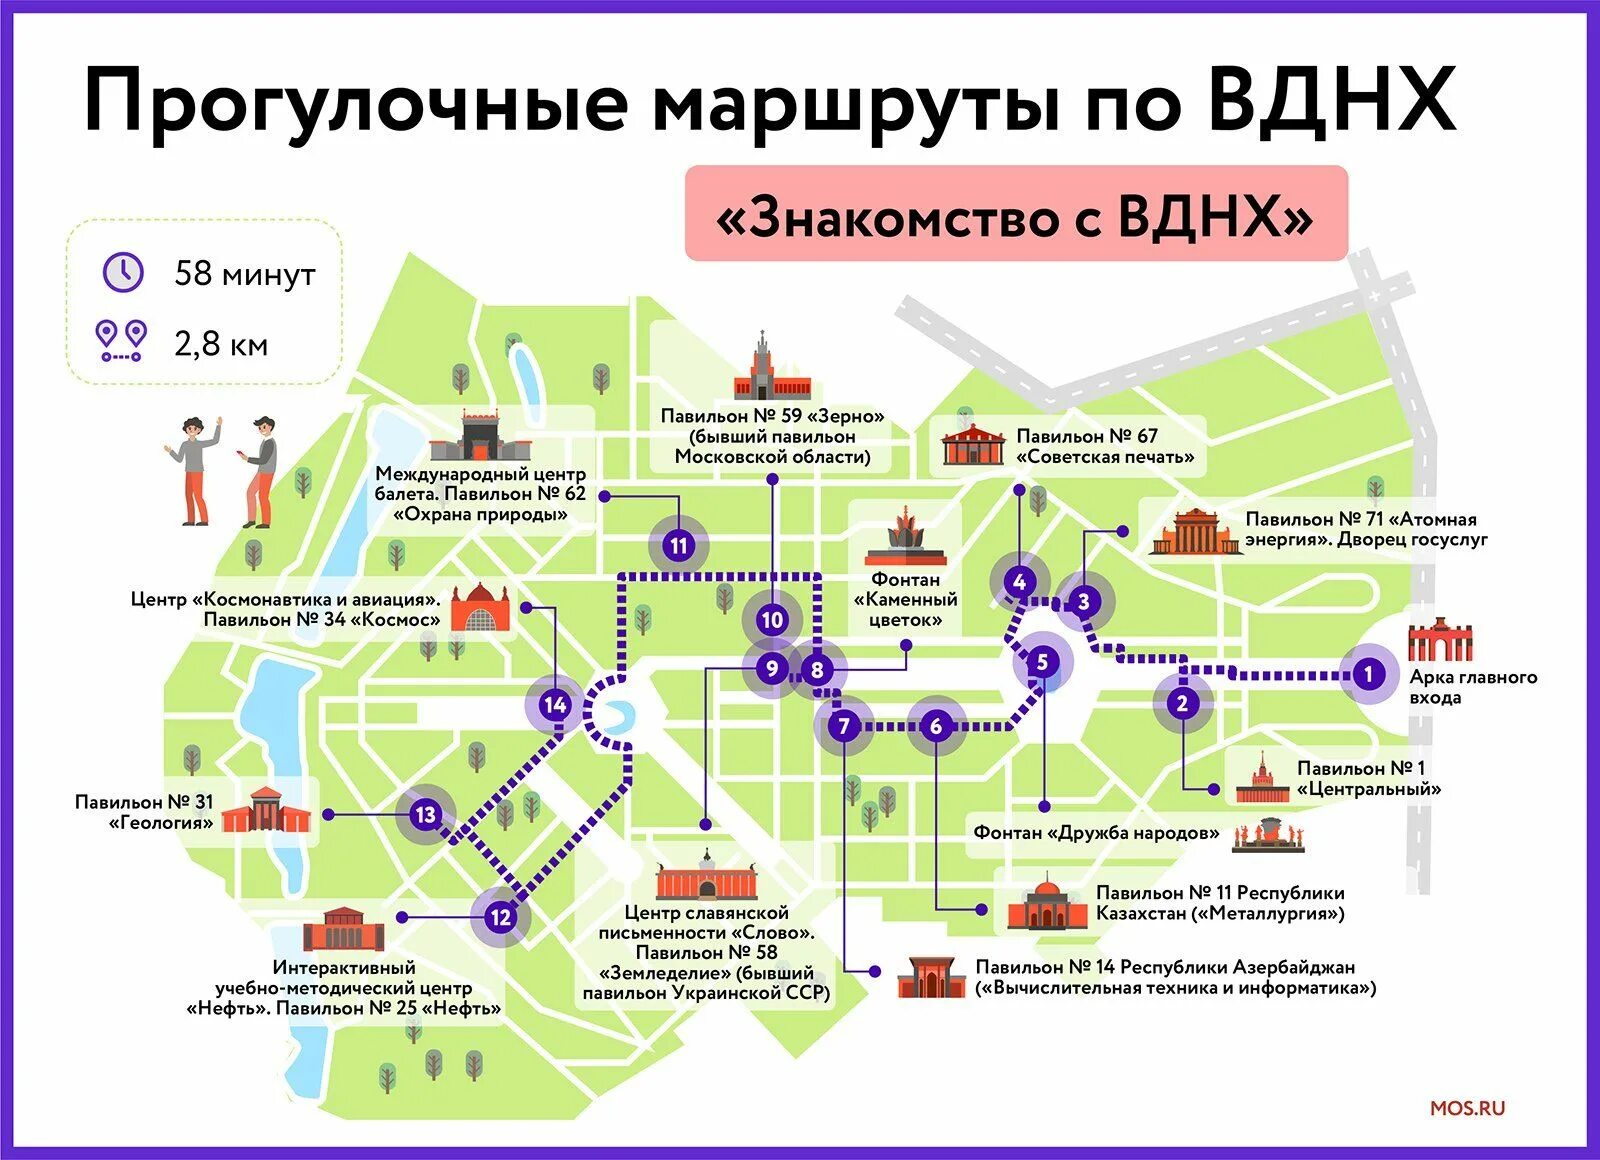 Карта центр столица. Карта парка ВДНХ В Москве. Схема ВДНХ В Москве. Территория парка ВДНХ. Прогулочные маршруты по ВДНХ.